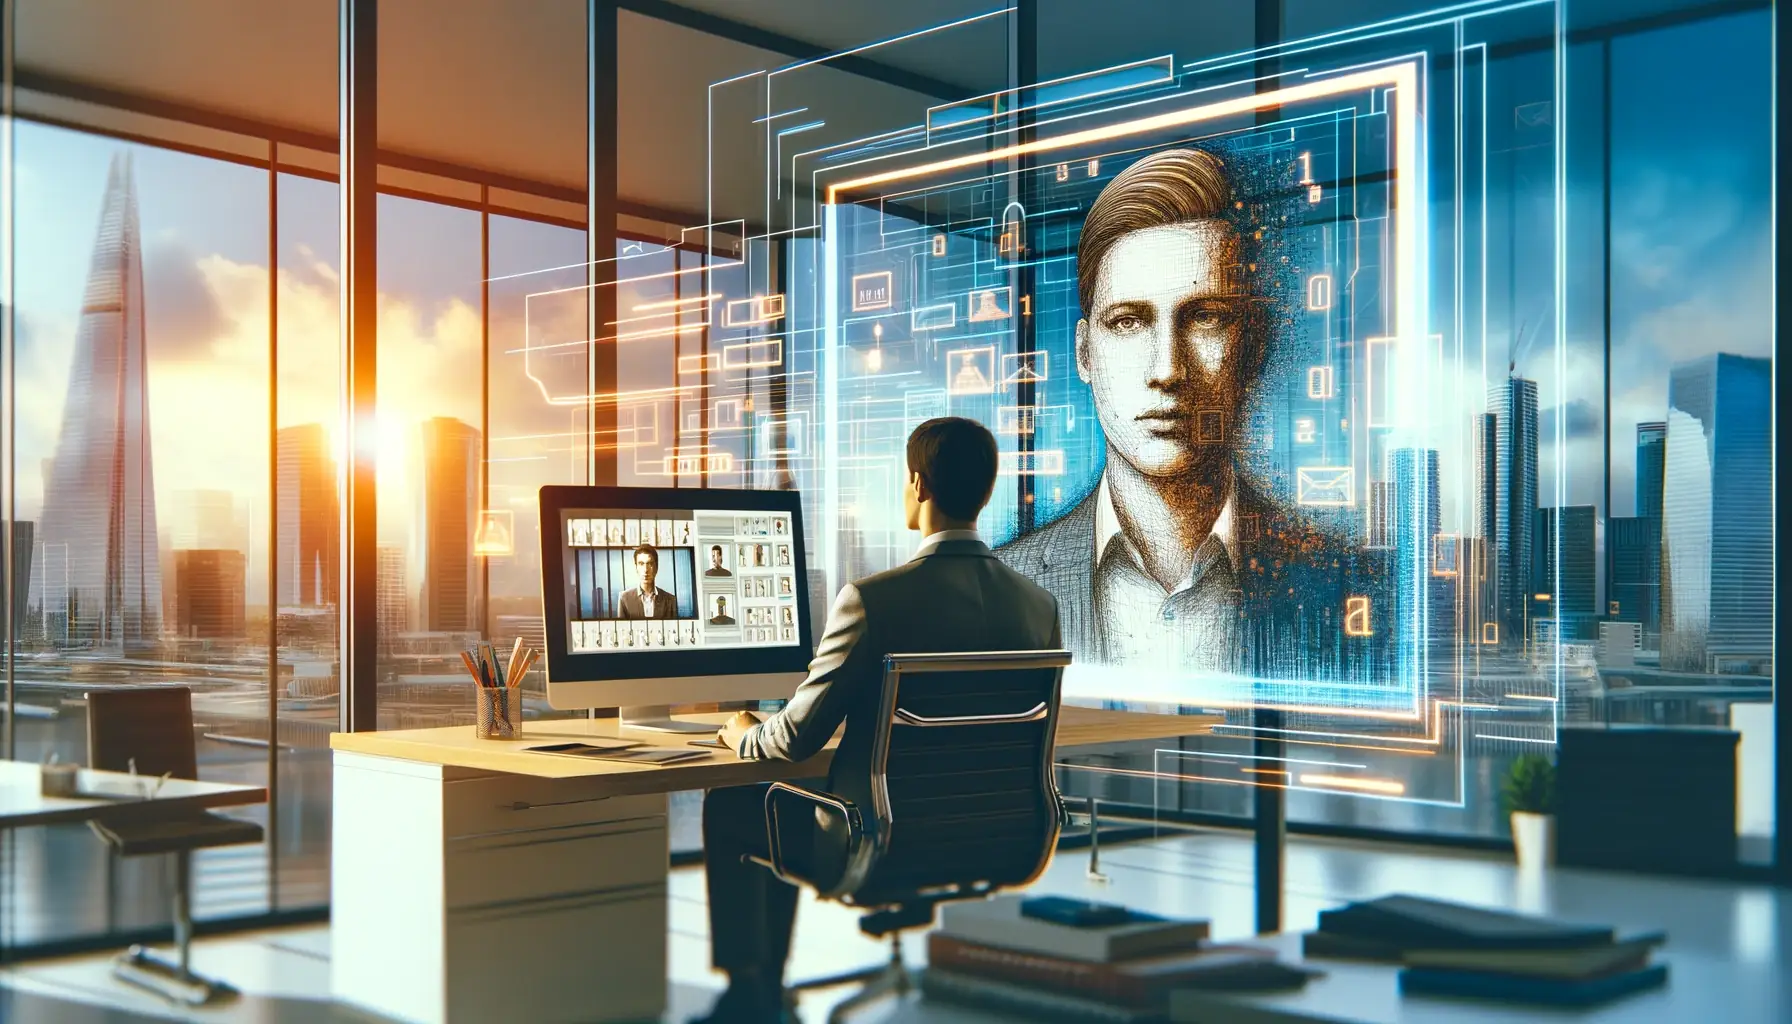 Das Bild zeigt eine Person, die an einem modernen Büroarbeitsplatz sitzt und auf einen Hochhaus-Skyline-Blick und futuristische Holographie-Interfaces schaut.